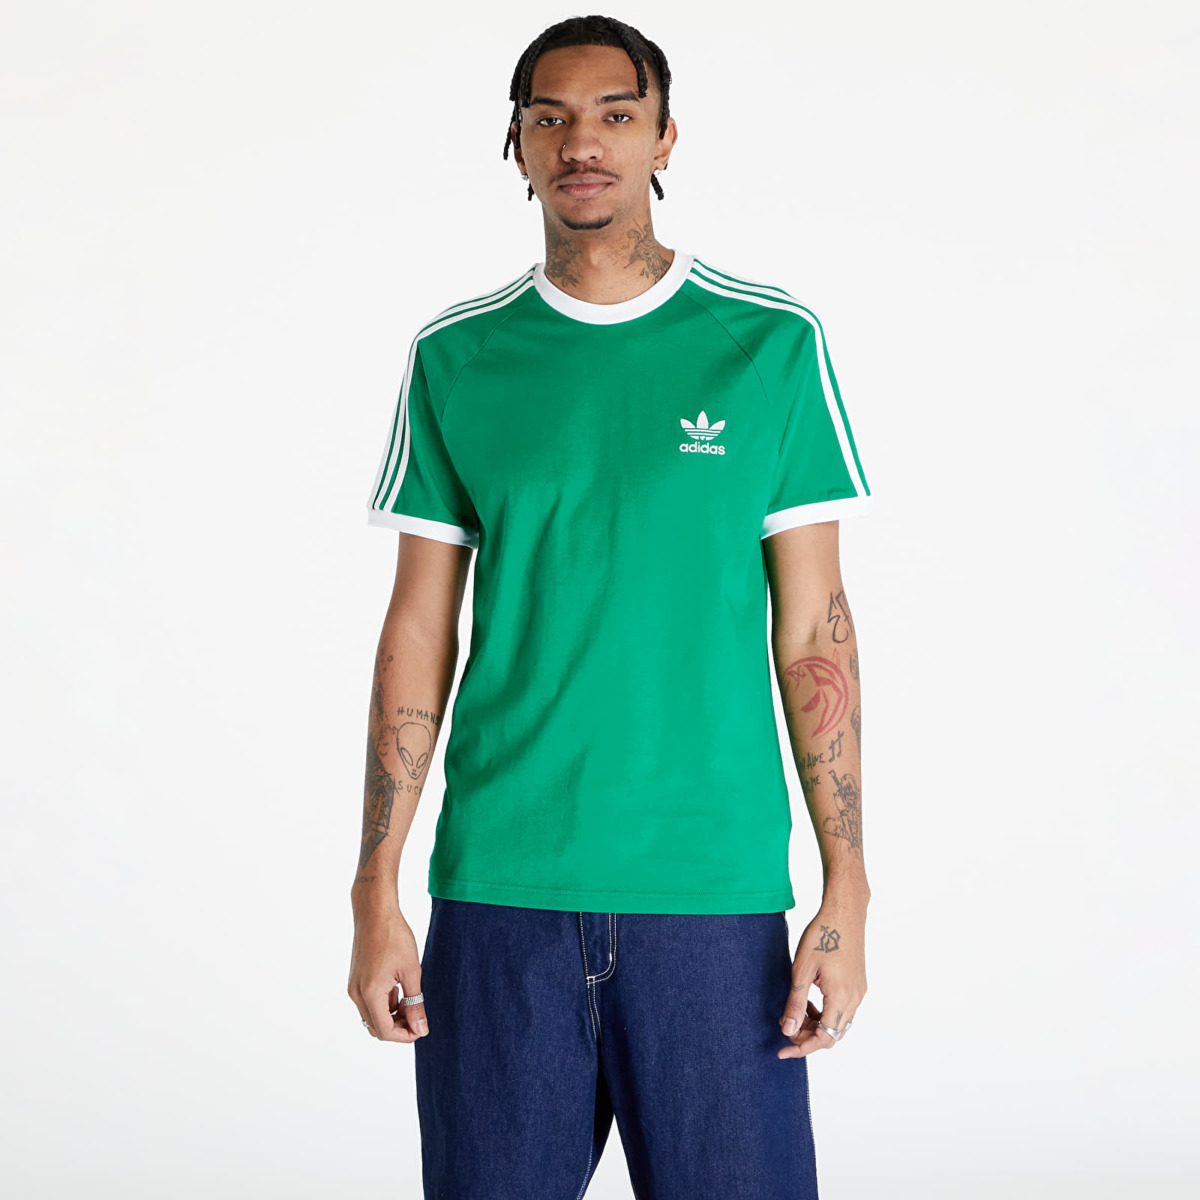 Adidas - Green Top for Men by Footshop GOOFASH